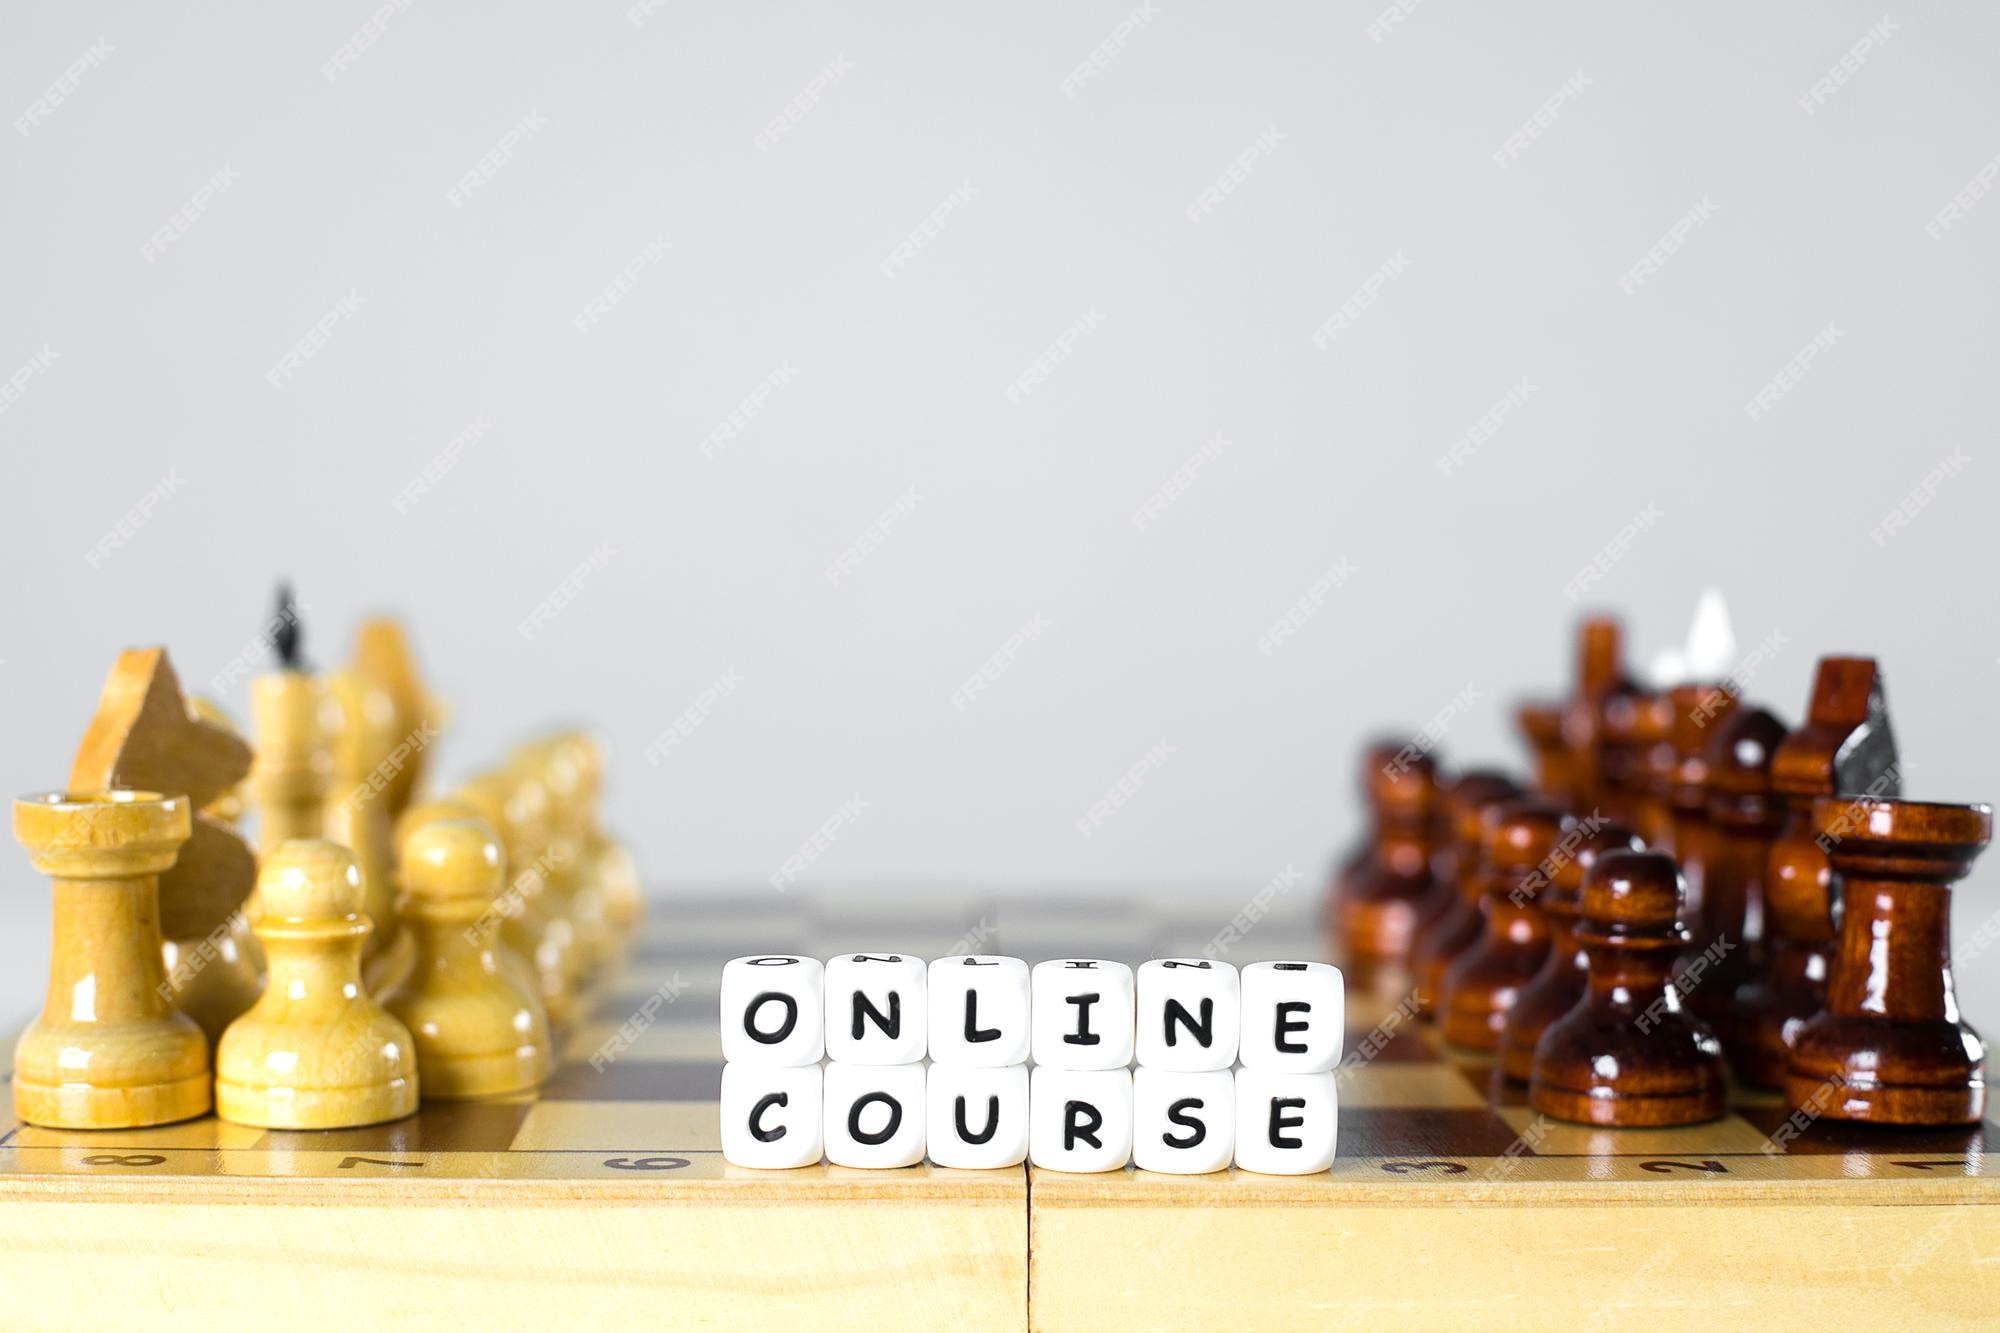 Conceito de curso de xadrez online educação online em período de quarentena